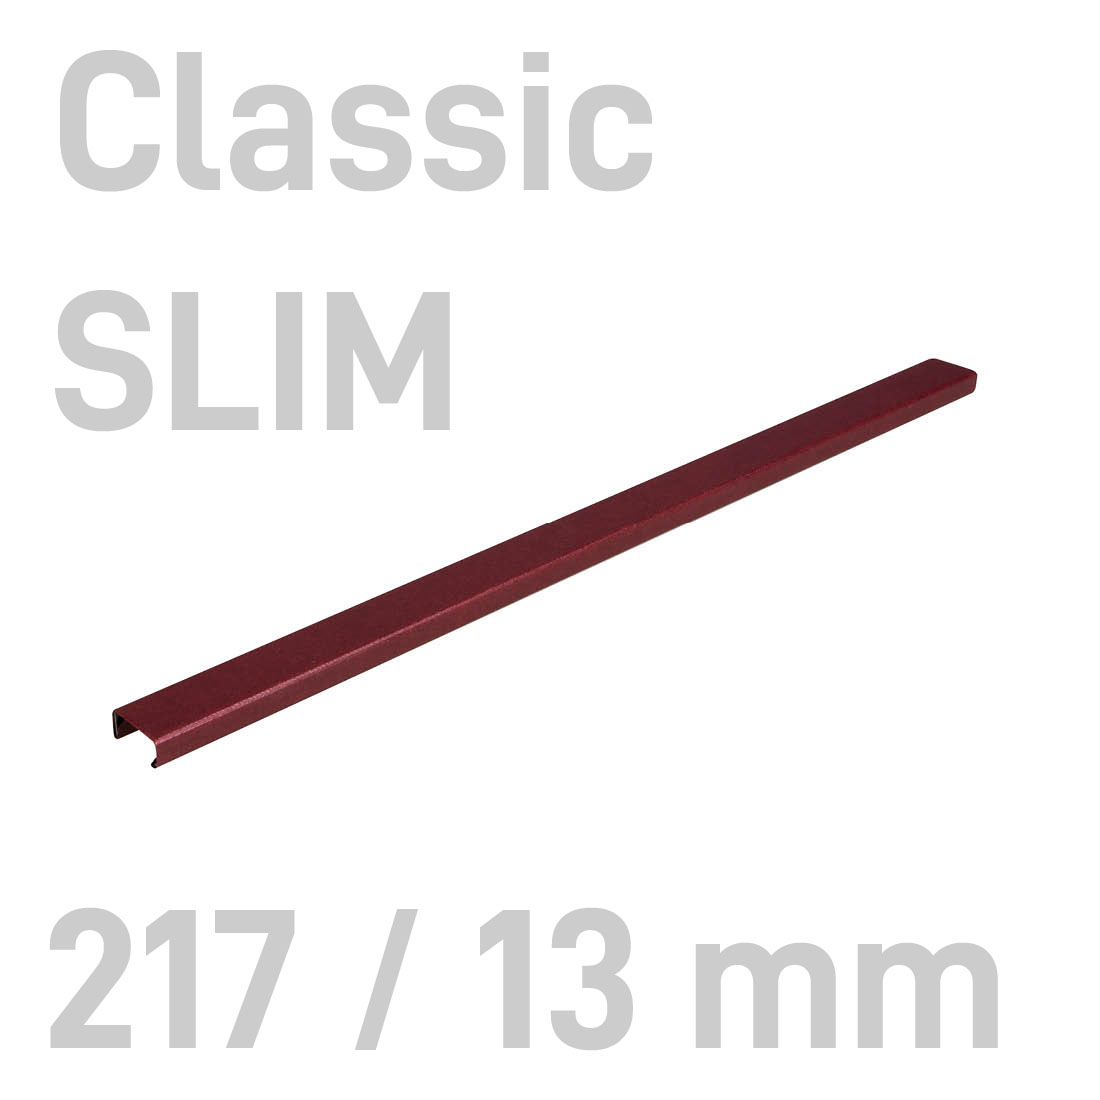 Kanał oklejany - O.CHANNEL Classic SLIM 217 mm (A4+ poziomo, A5+ pionowo) - 13 mm - bordowy - 10 sztuk